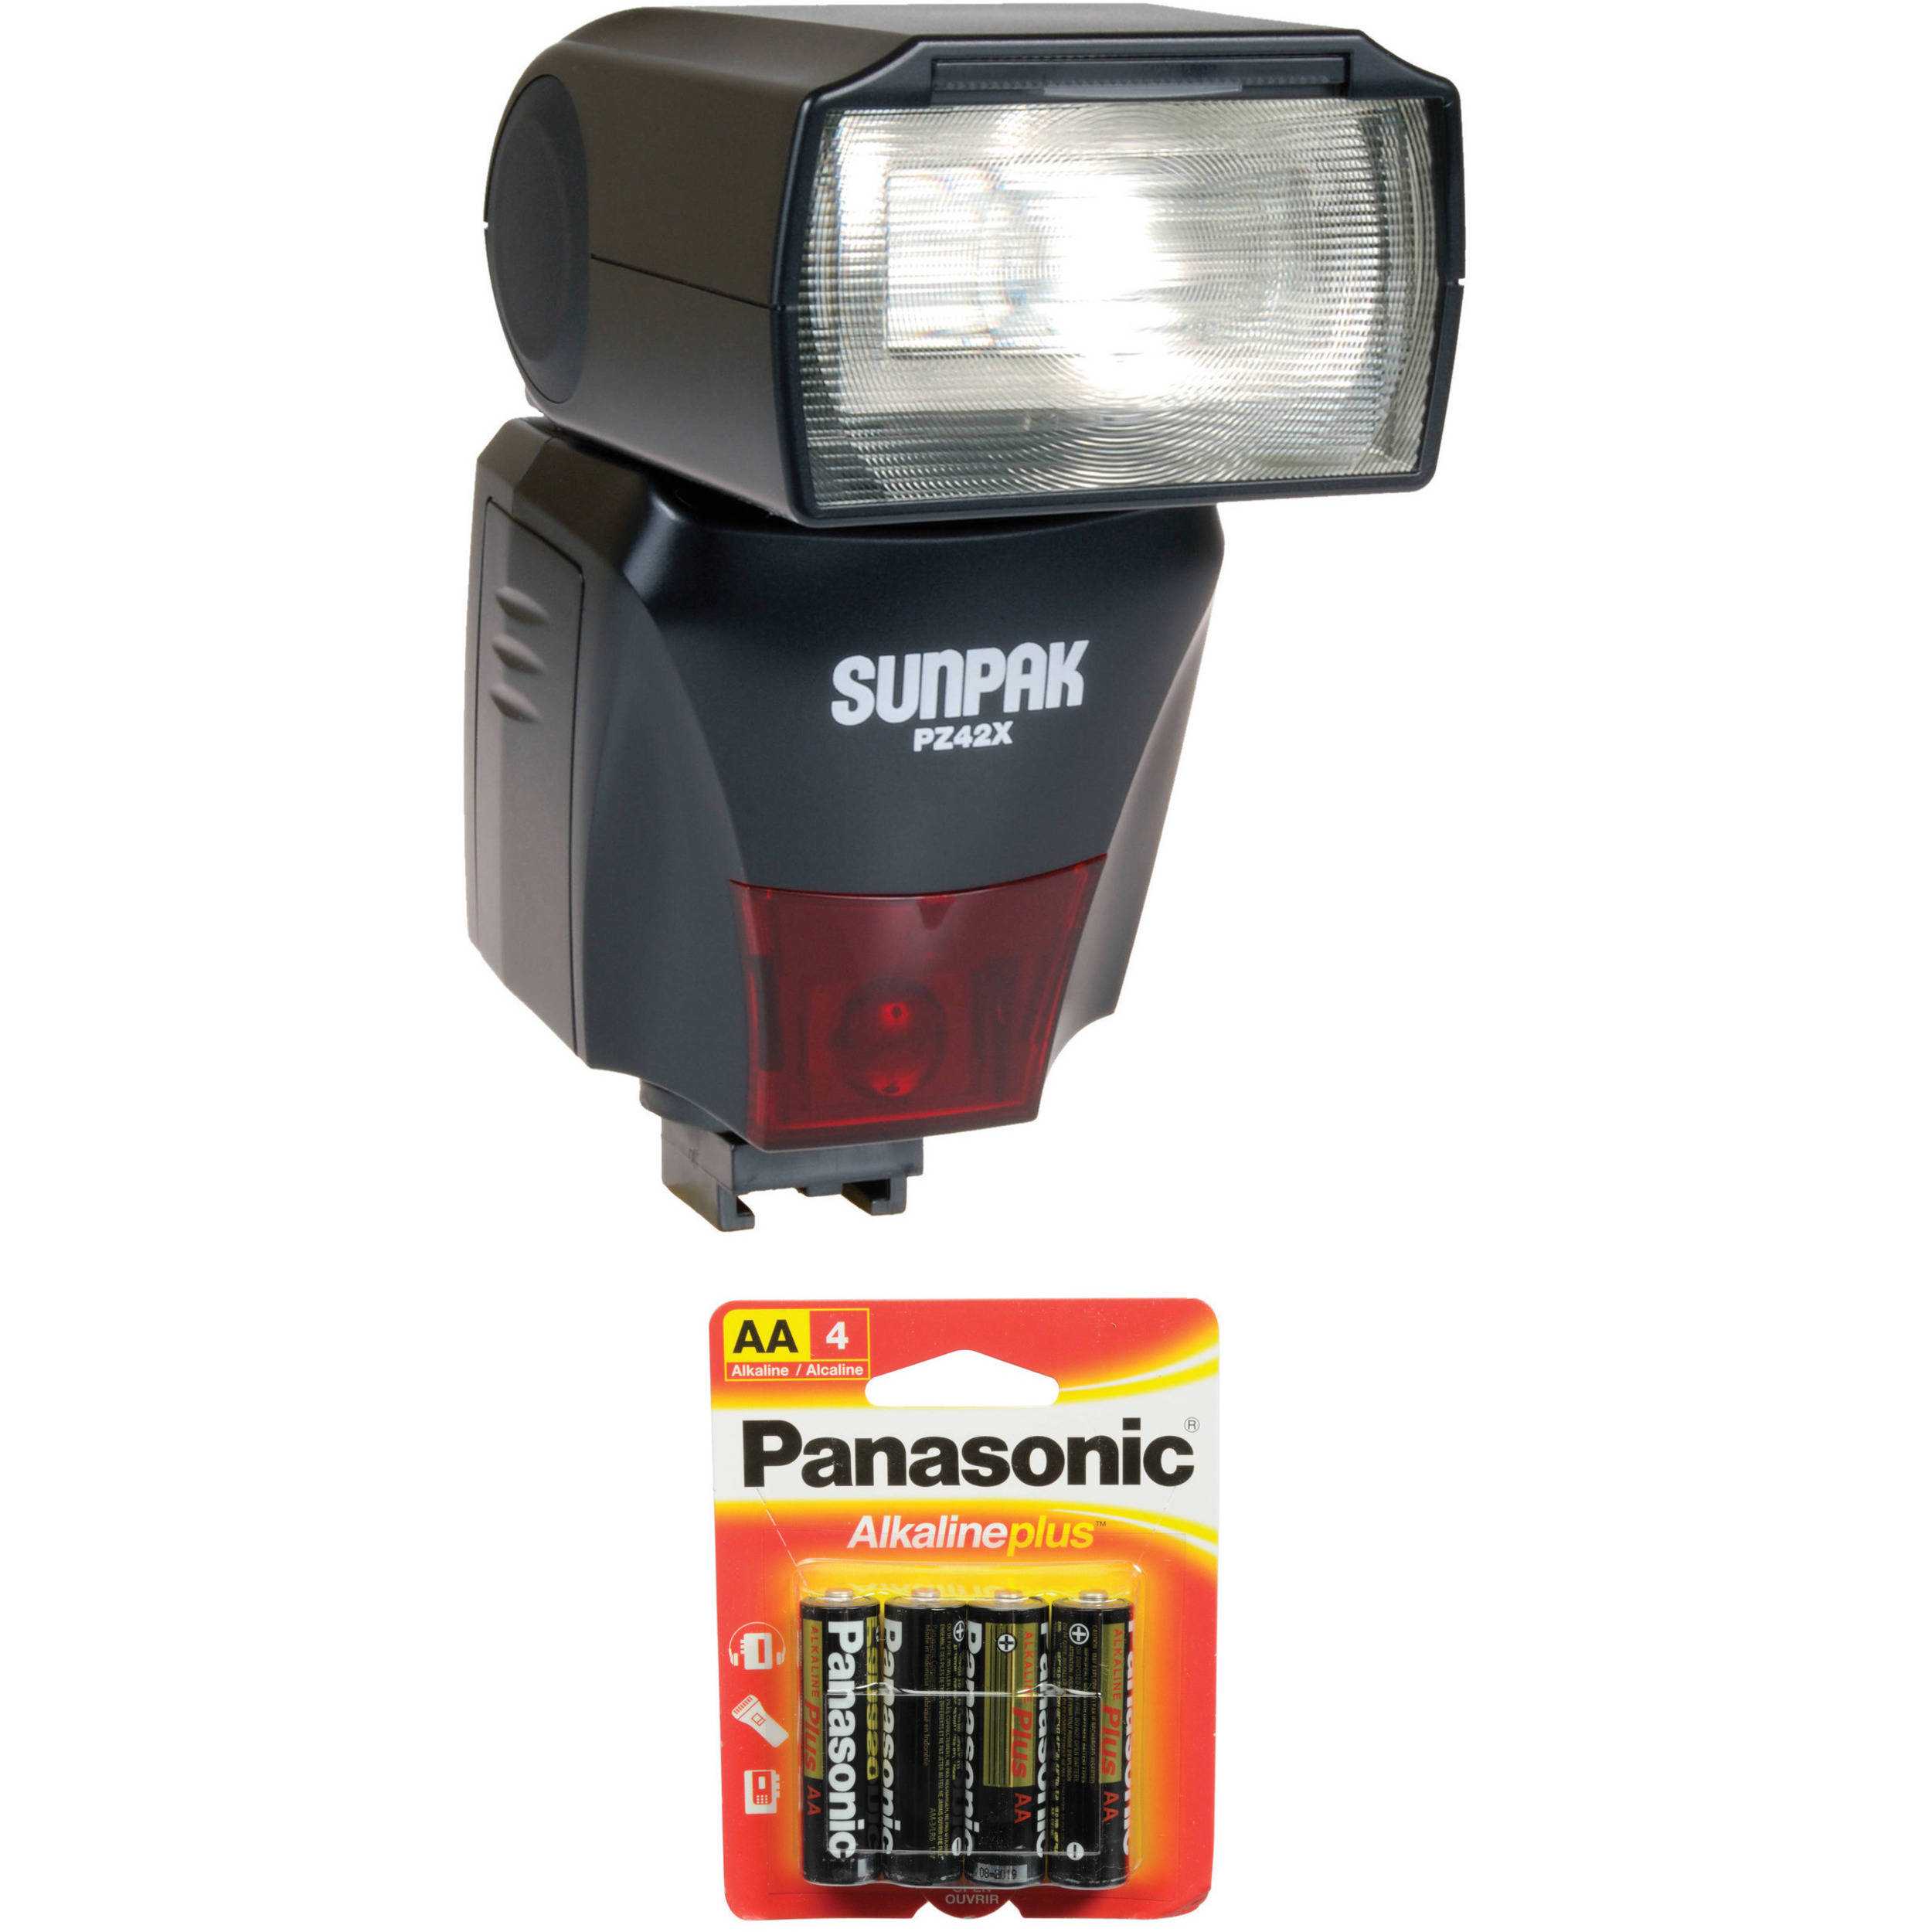 Фотовспышка Sunpak PZ42X Digital Flash for Sony - подробные характеристики обзоры видео фото Цены в интернет-магазинах где можно купить фотовспышку Sunpak PZ42X Digital Flash for Sony